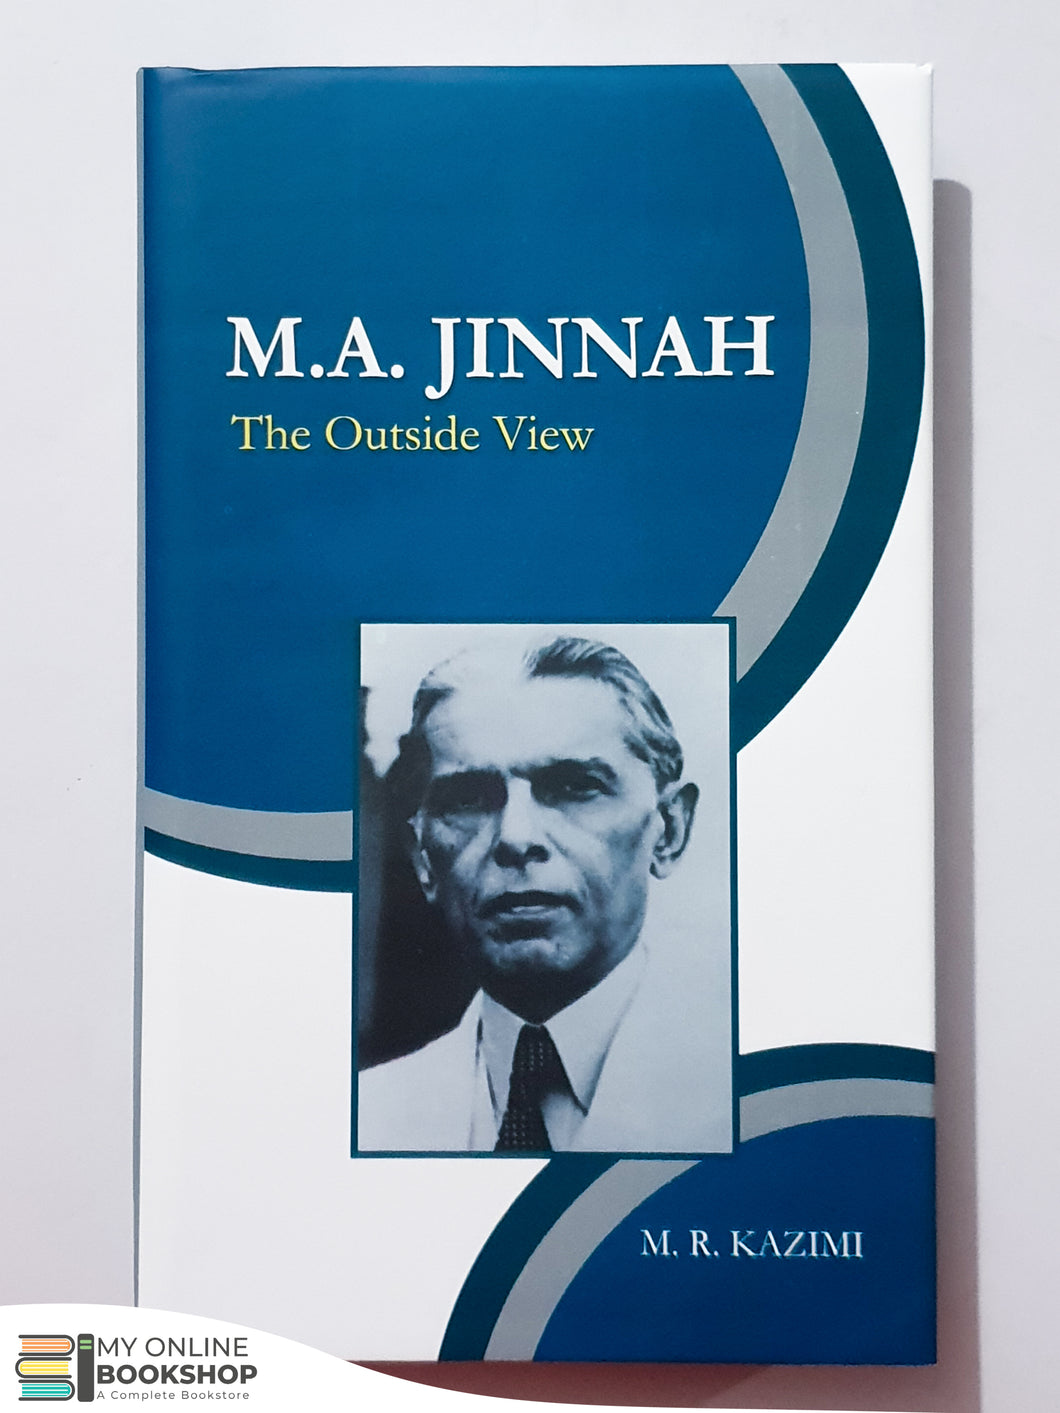 M. A. Jinnah, The Outside View